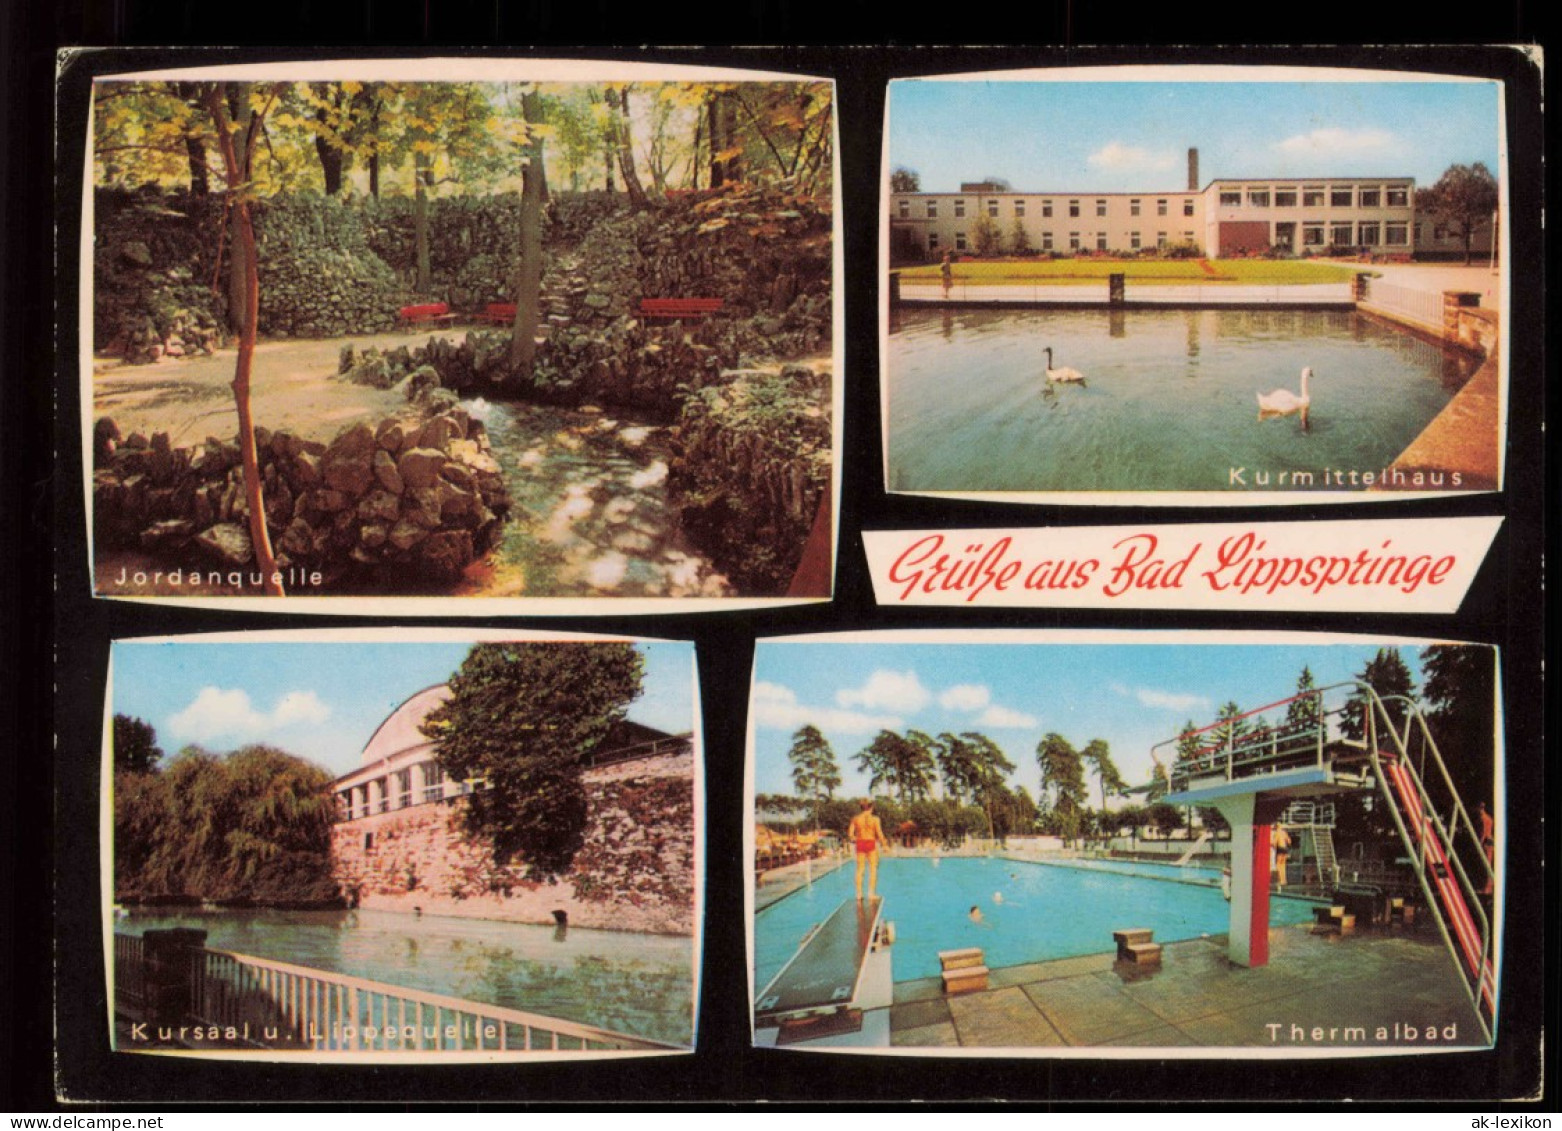 Bad Lippspringe Mehrbildkarte Mit Kurmittelhaus Thermalbad Jordanquelle 1965 - Bad Lippspringe